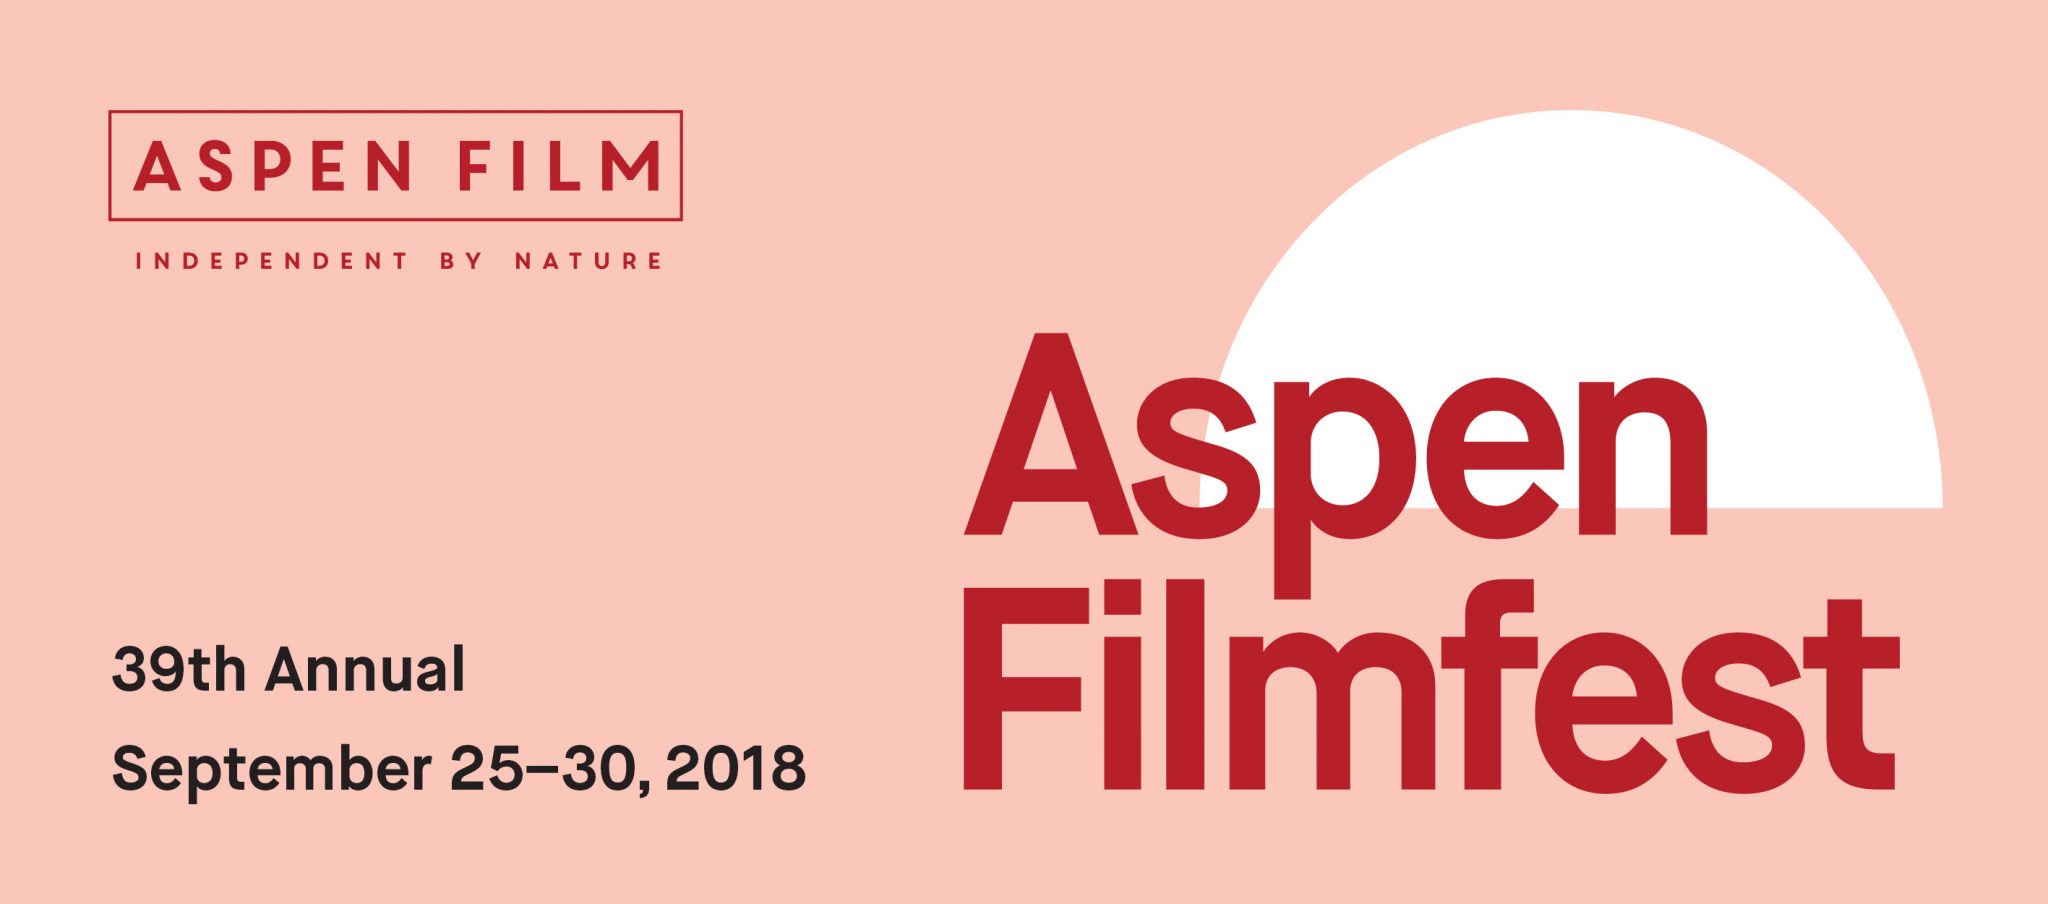 ASPEN FILM ANNOUNCES 39TH ASPEN FILMFEST PROGRAM